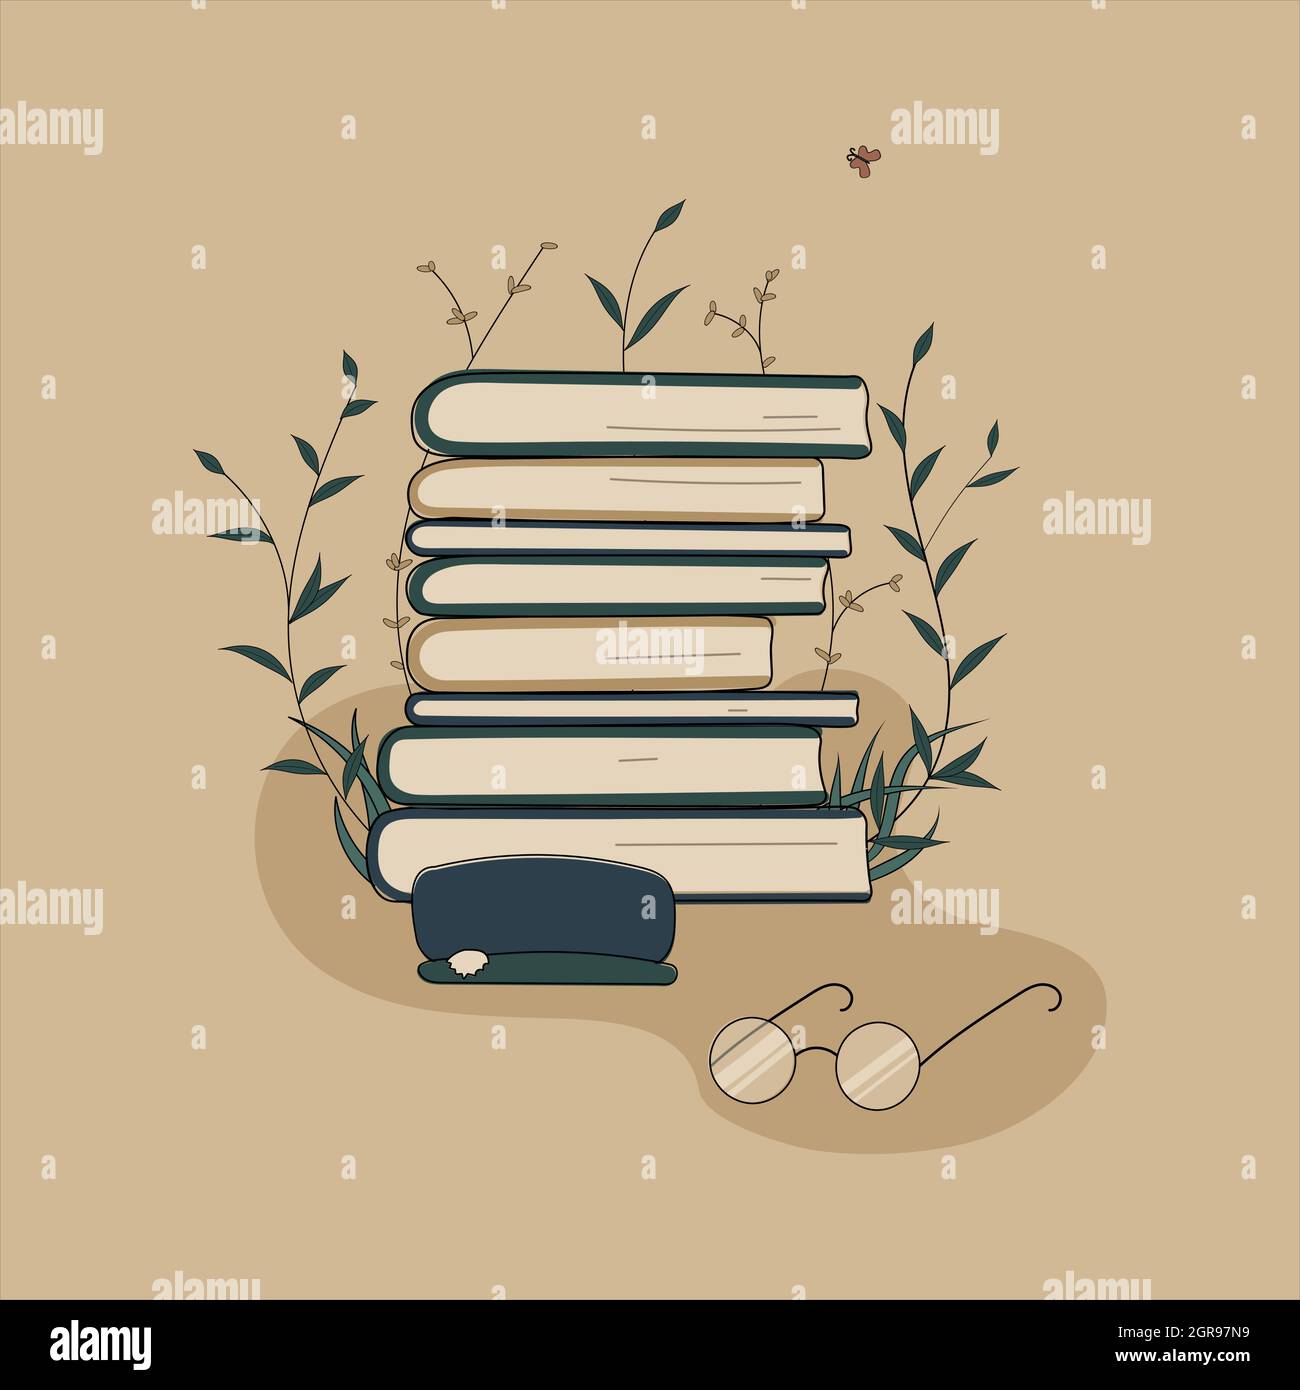 Concepto:libro es fuente de conocimiento.Glasses con una pila de libros de caso y lectura de libro.Pile de volúmenes rodeados de plantas como símbolo de la educación Ilustración del Vector